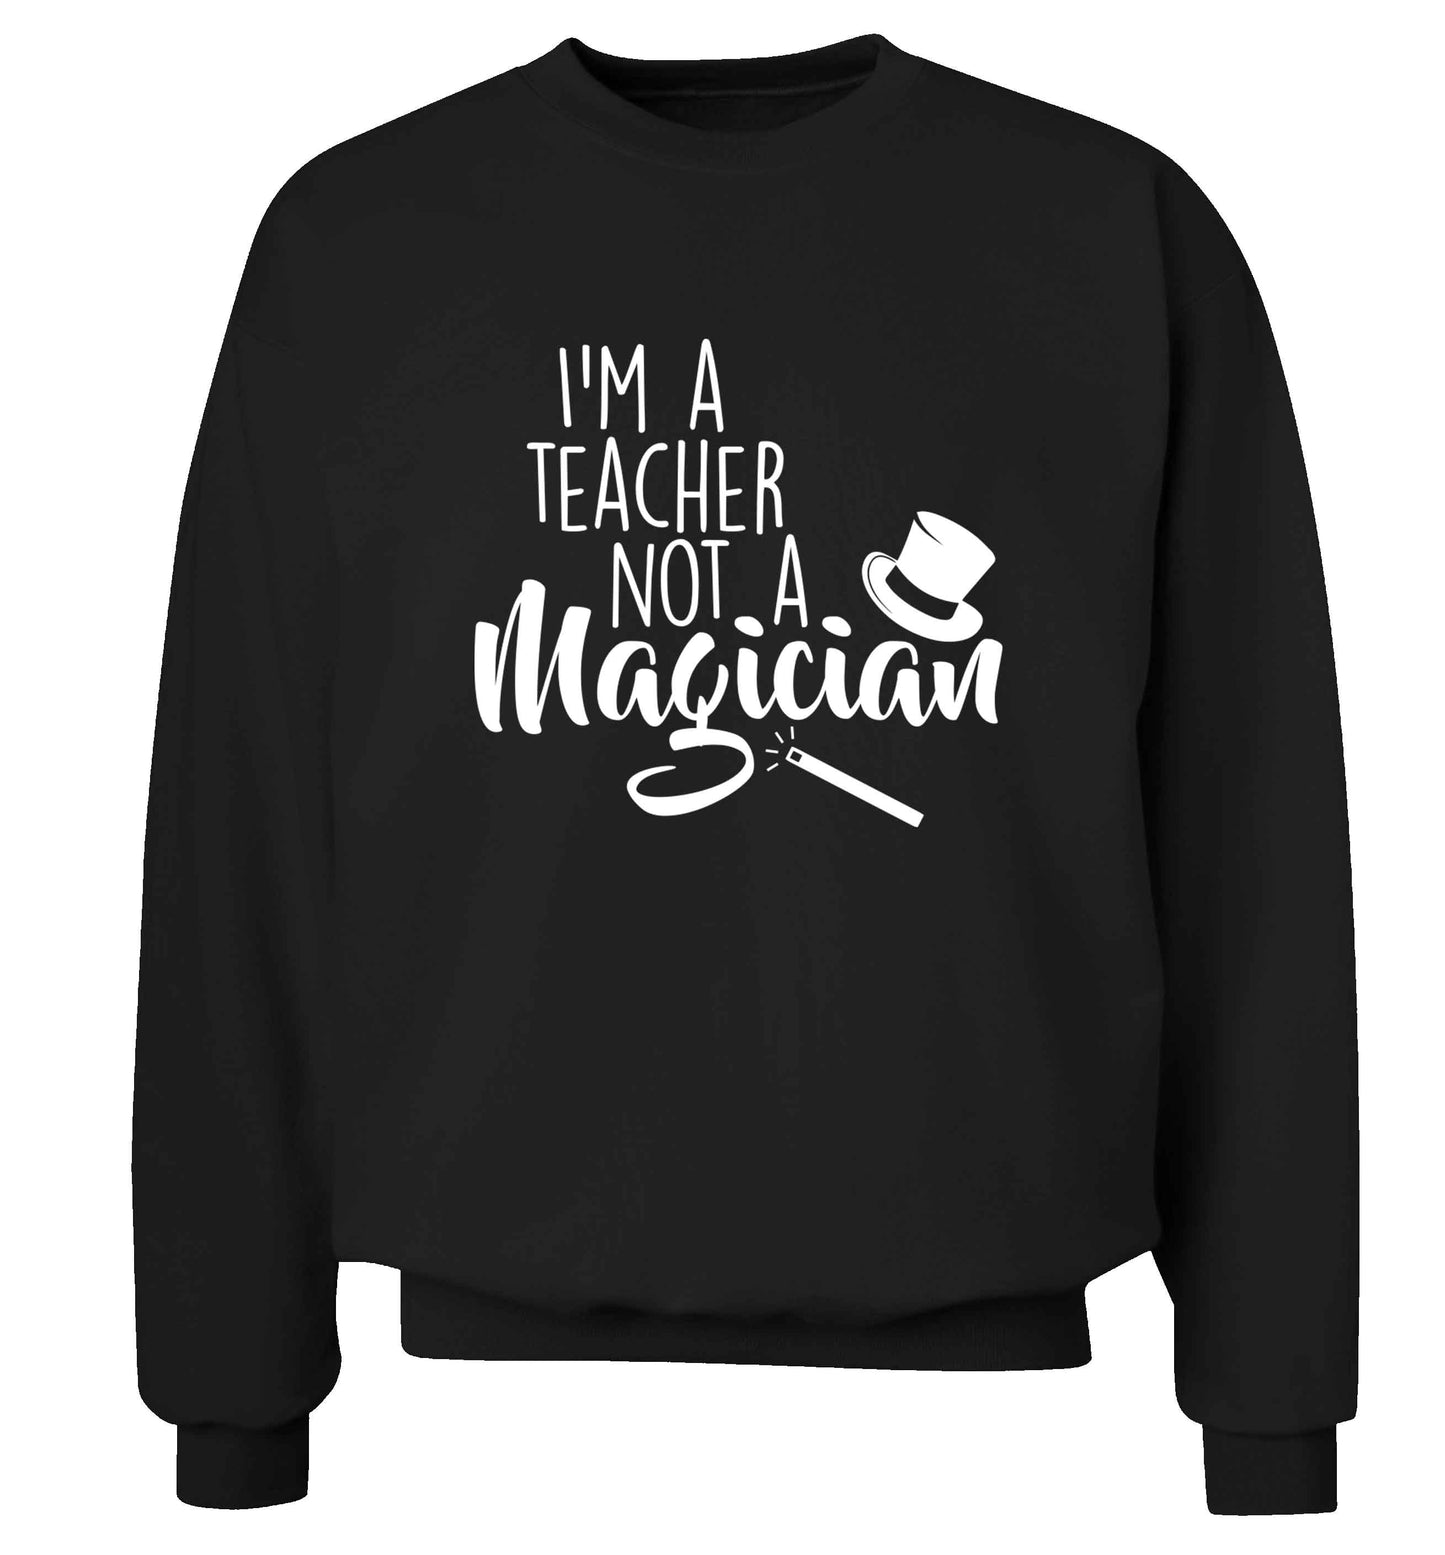 I'm a teacher not a magician adult's unisex black sweater 2XL